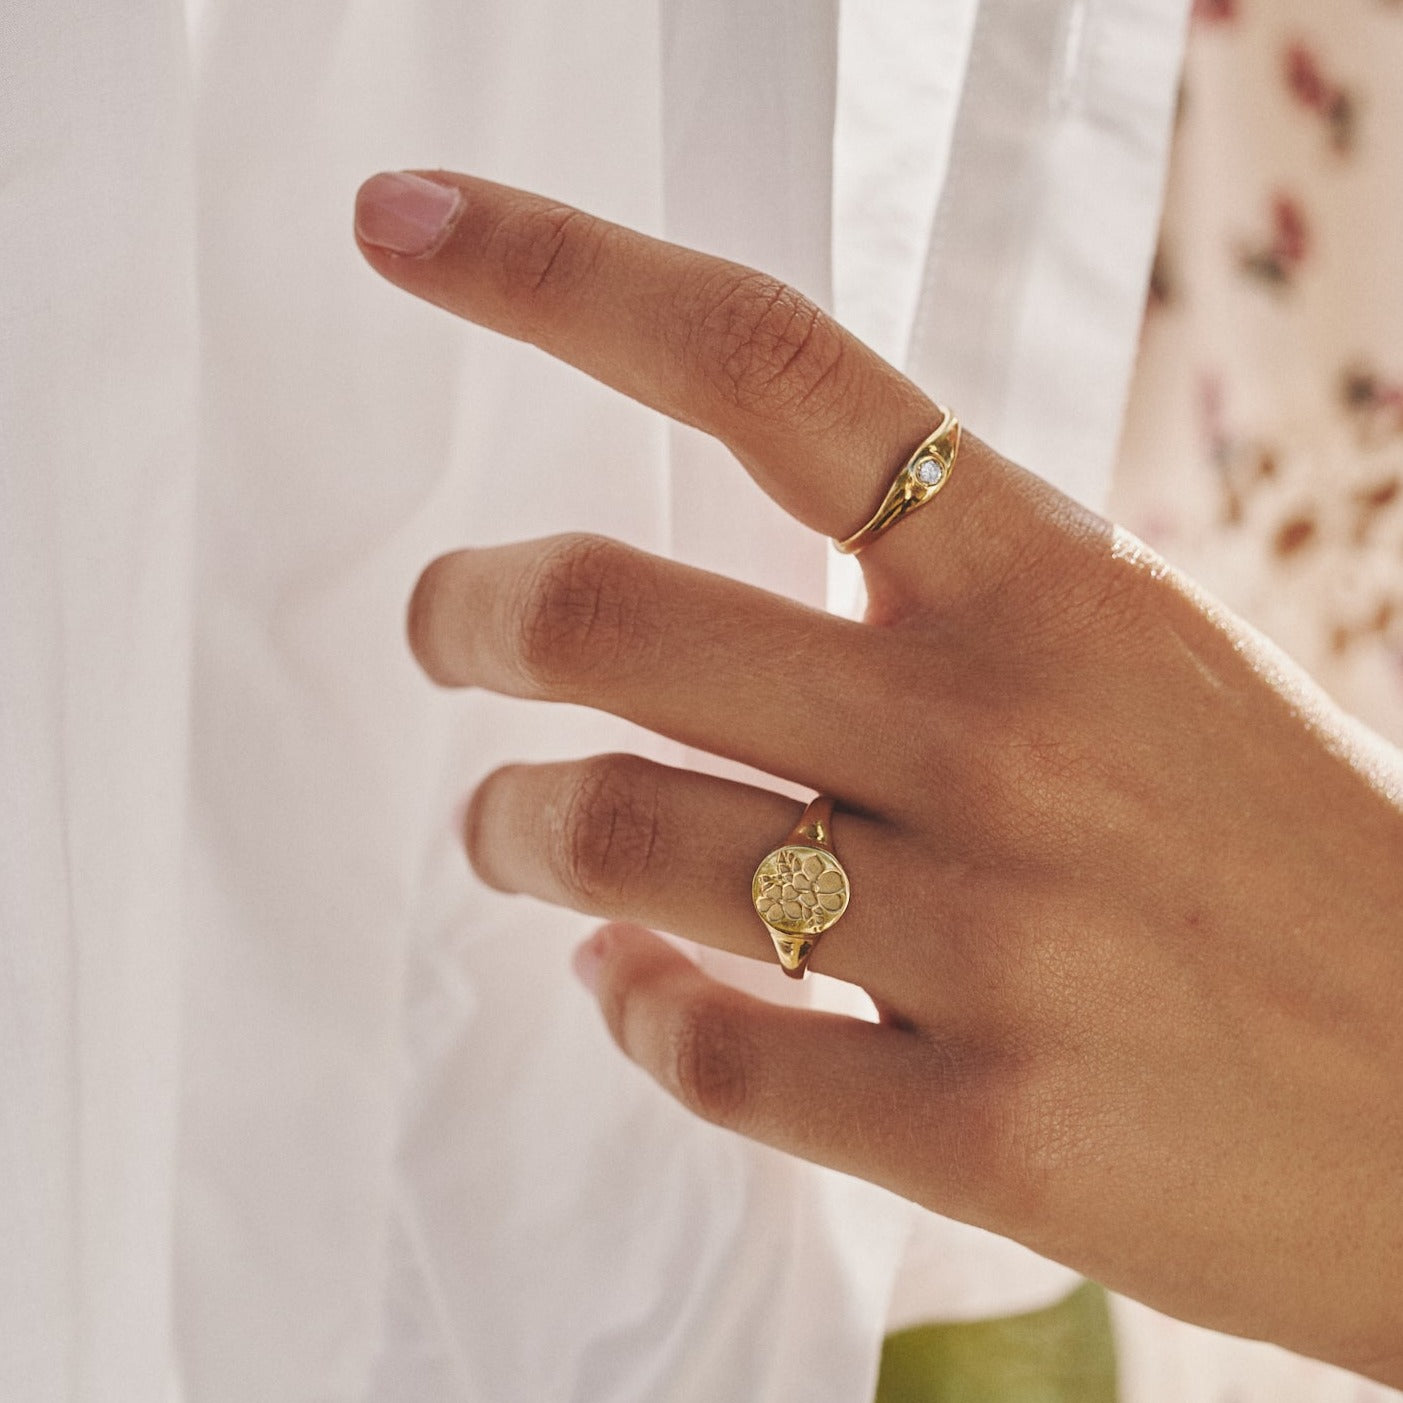 Mano de mujer acariciando una tela y mostrando el anillo Loretta junto al sello Allegra, ambos fabricados artesanalmente por LA MUSA.